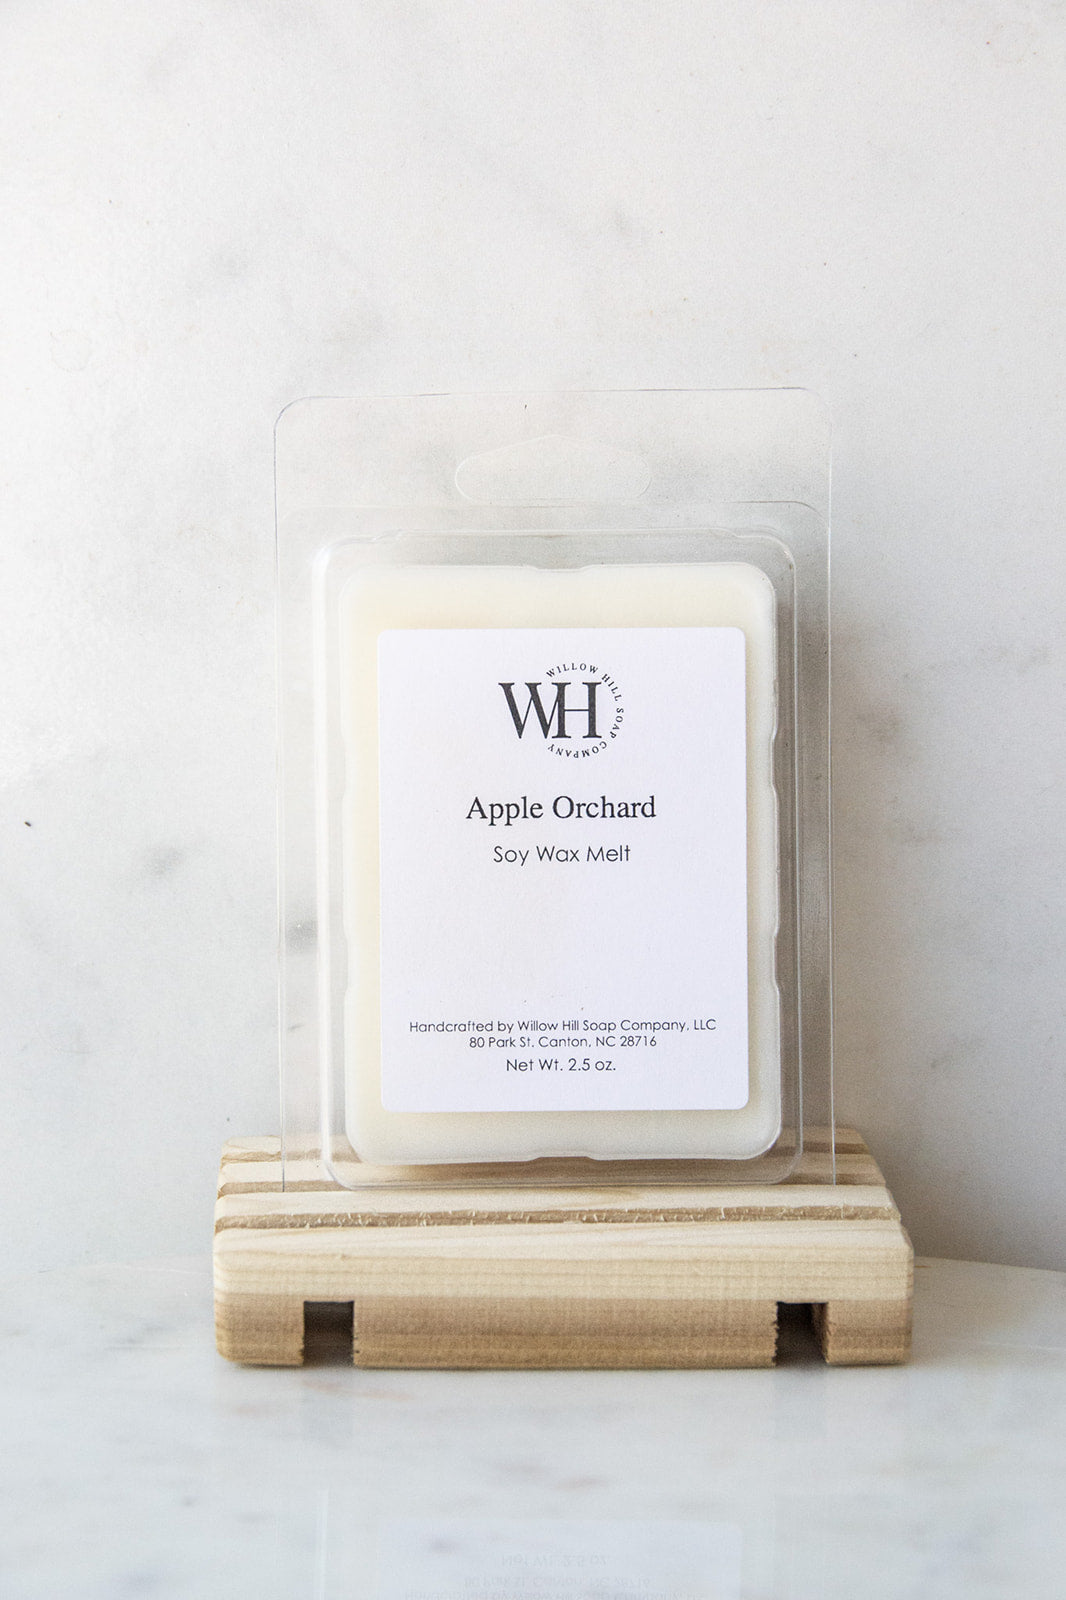 Apple Orchard Wax Melt